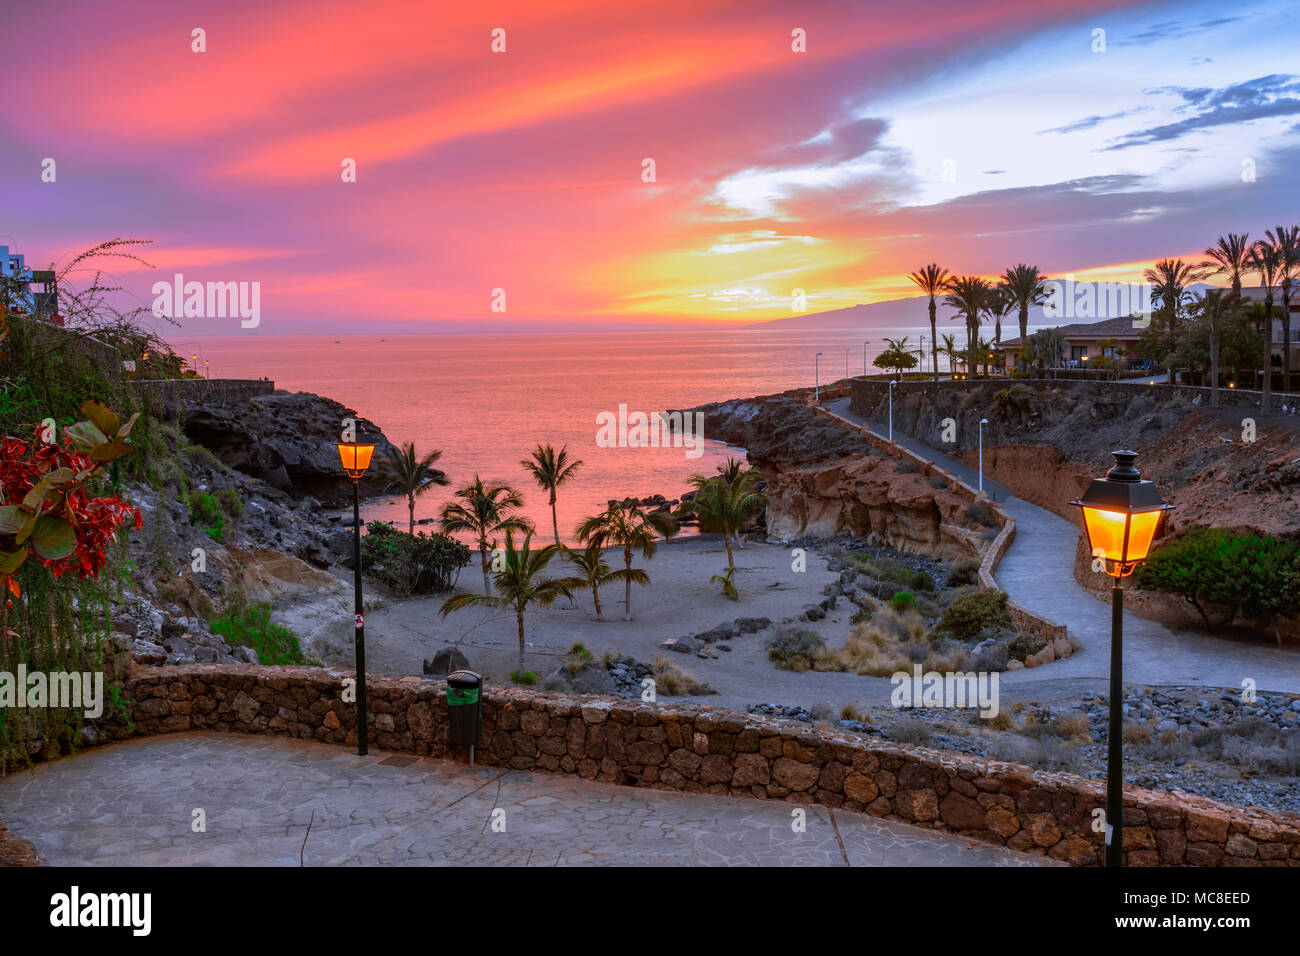 Playa Paraiso, Tenerife, Canary islands, Spain: Beautiful sunset on Playa Las Galgas Stock Photo